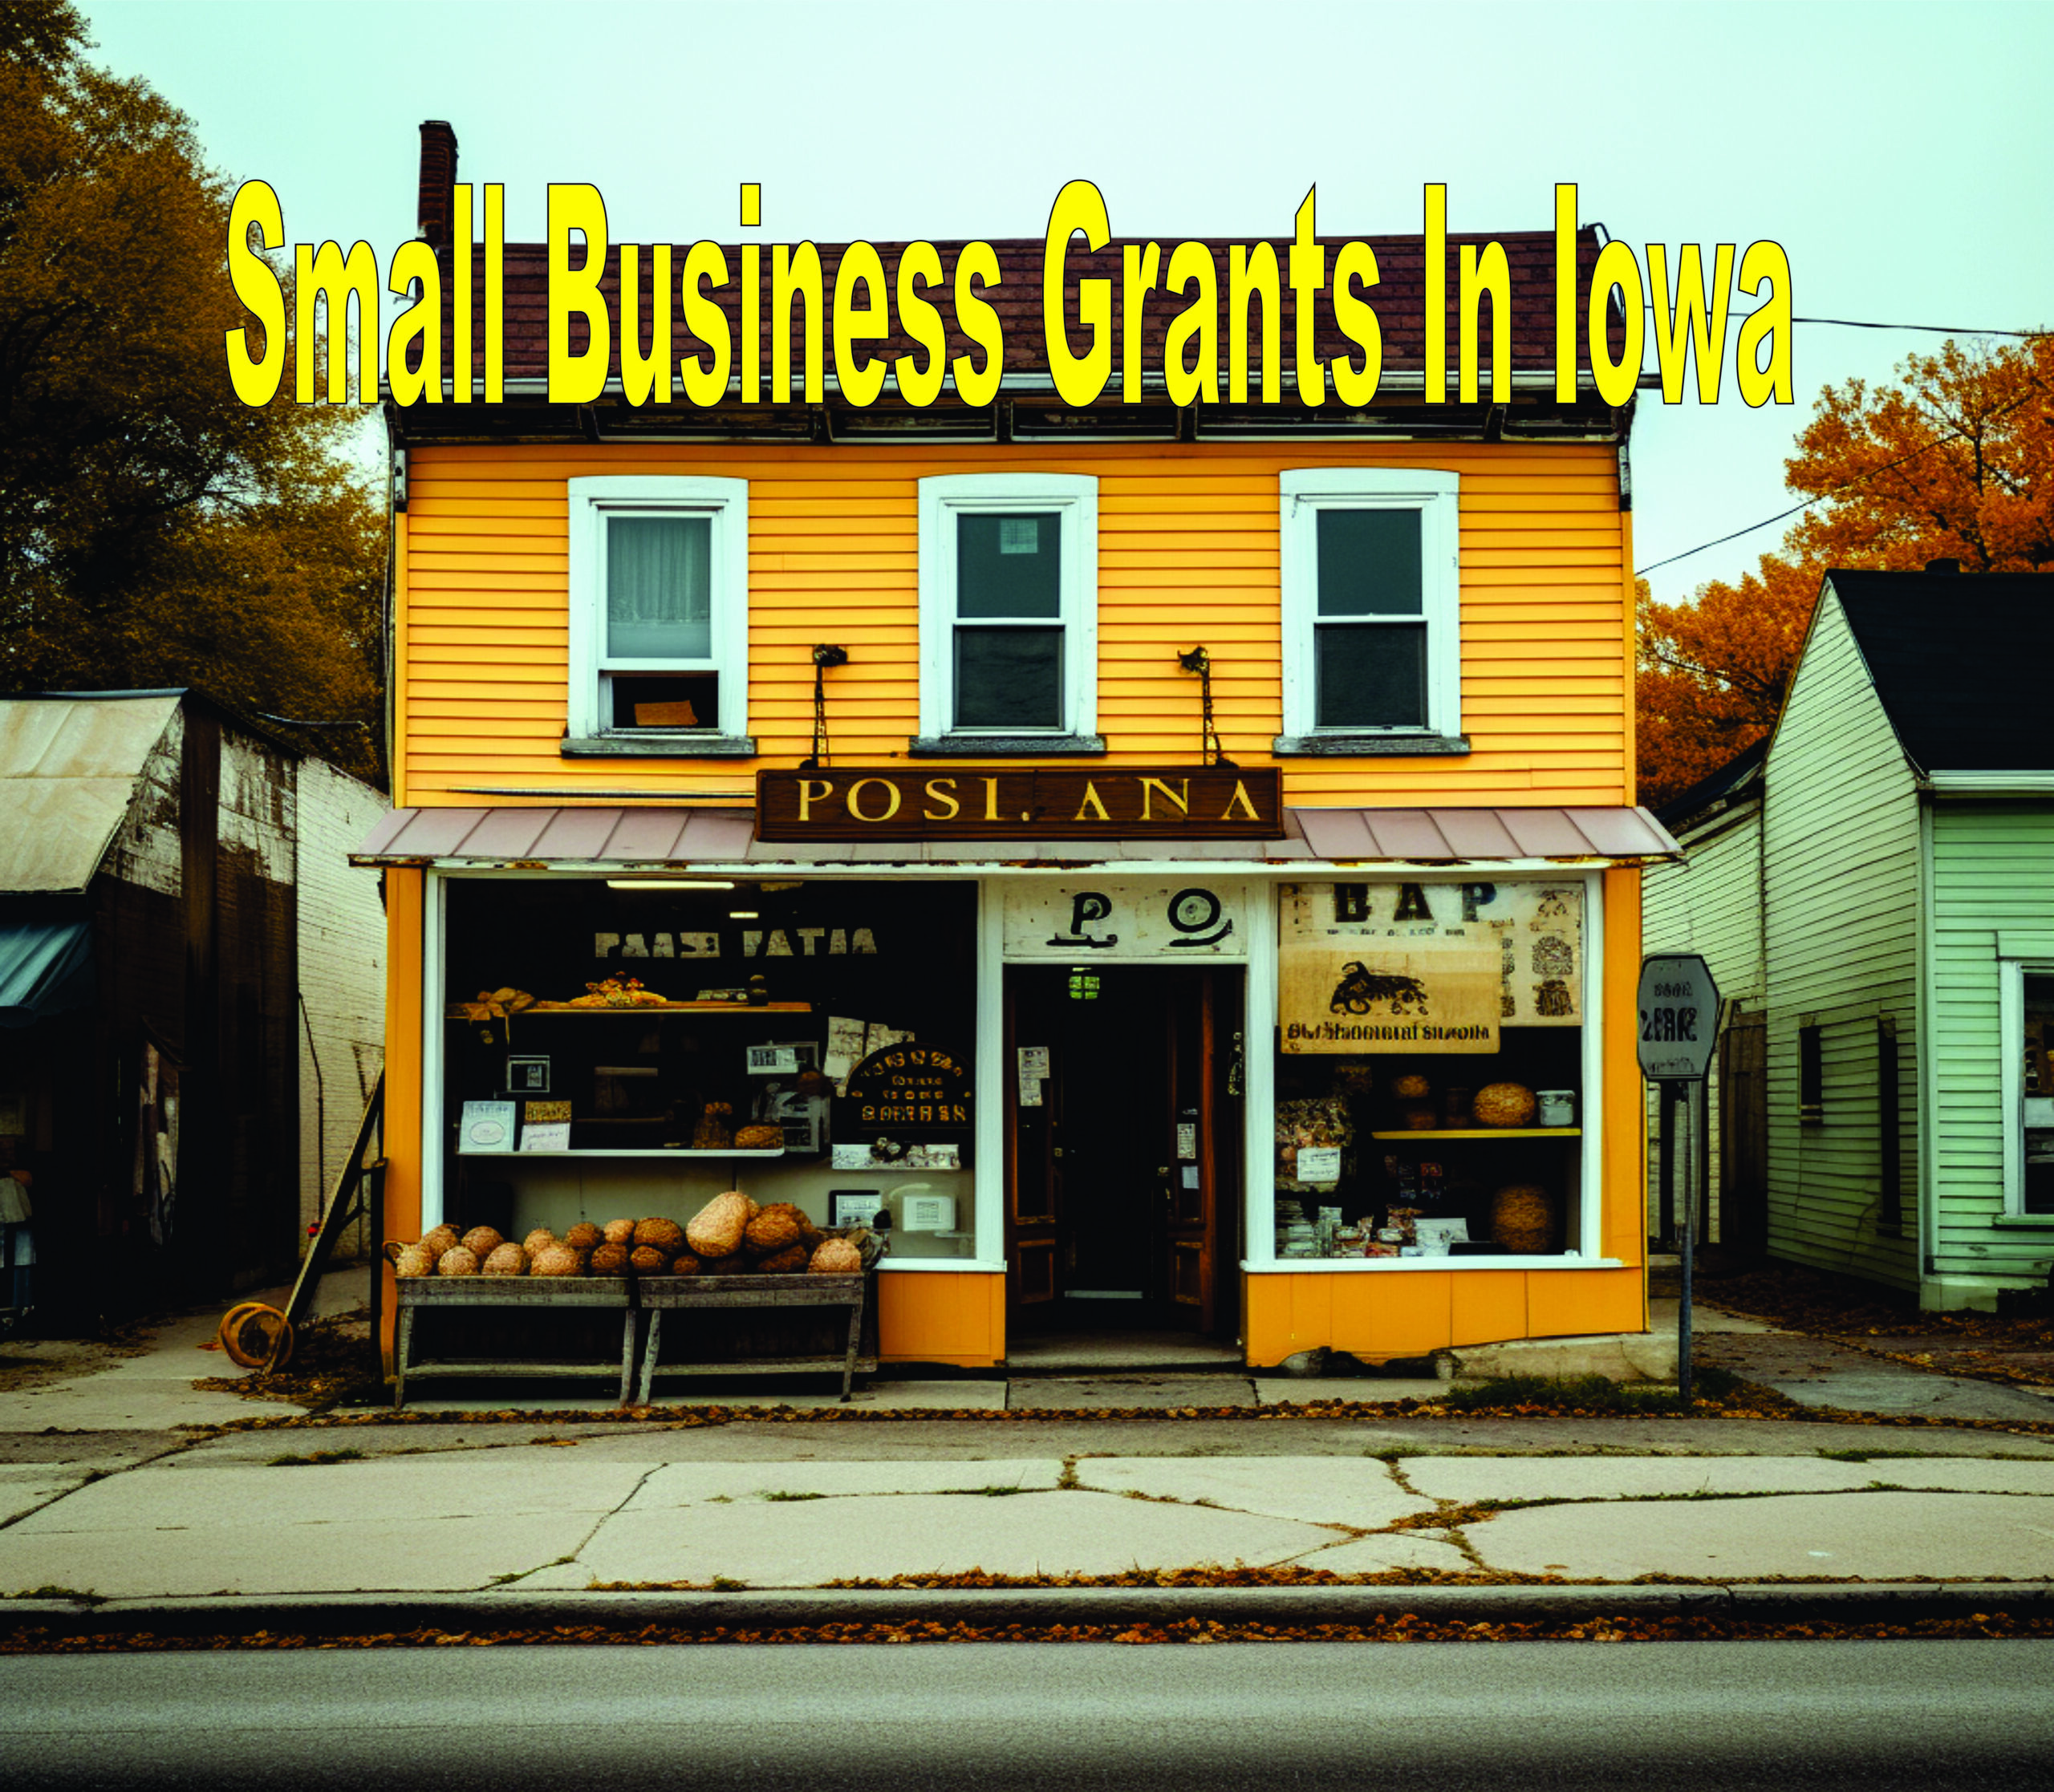 Small Business Grants In Iowa